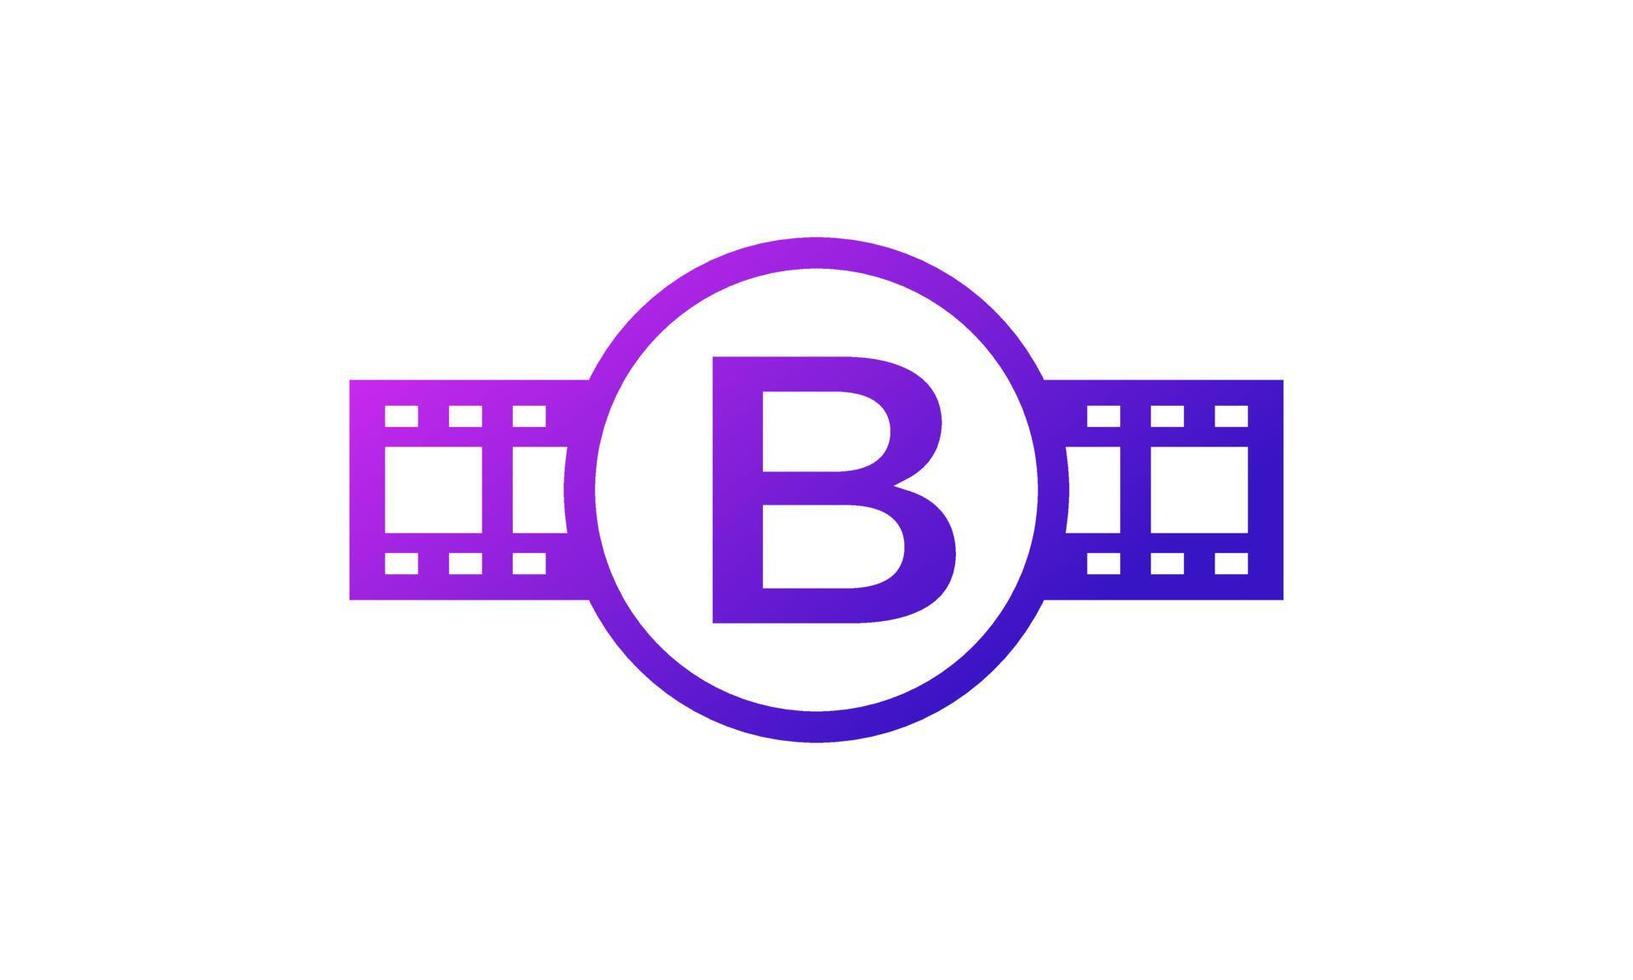 beginletter b cirkel met spoelstrepen filmstrip voor film film bioscoopproductie studio logo inspiratie vector